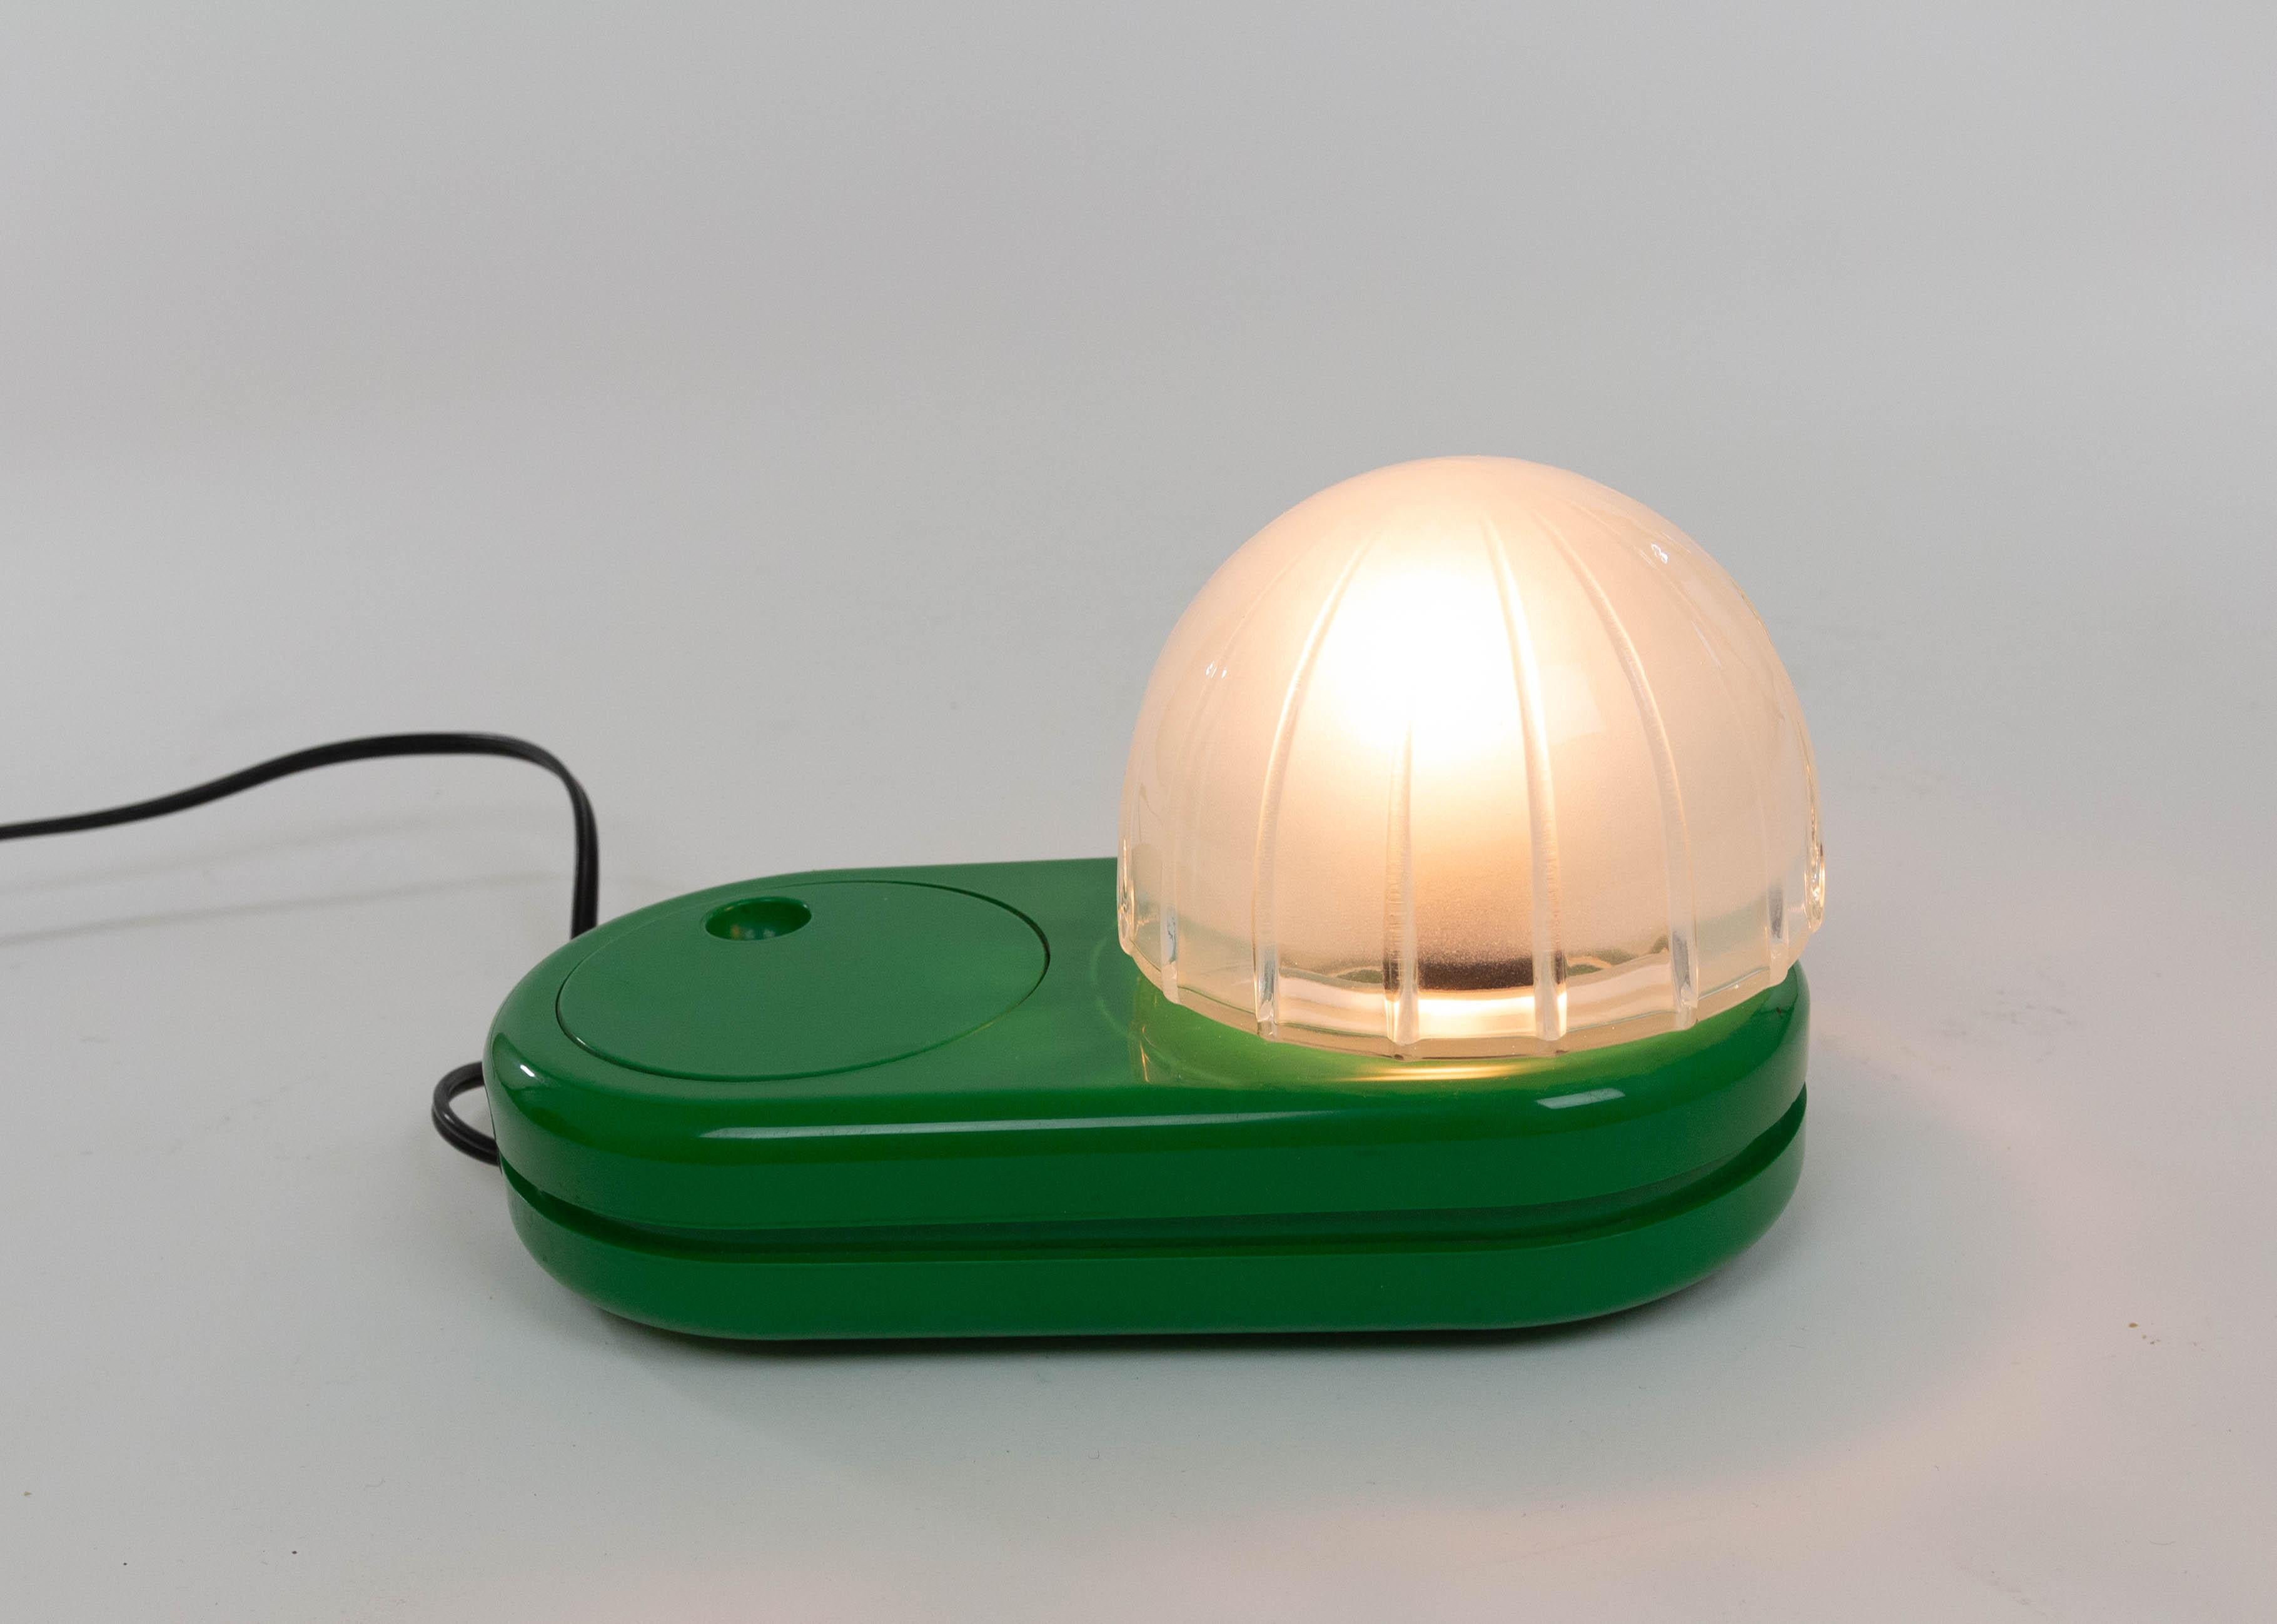 Lampe de table Farstar verte conçue par Adalberto Dal Lago (1973) et fabriquée par Francesconi.

L'abat-jour en verre en forme de dôme repose sur une base en plastique. Le grand variateur de lumière rond, qui fait également office d'interrupteur,